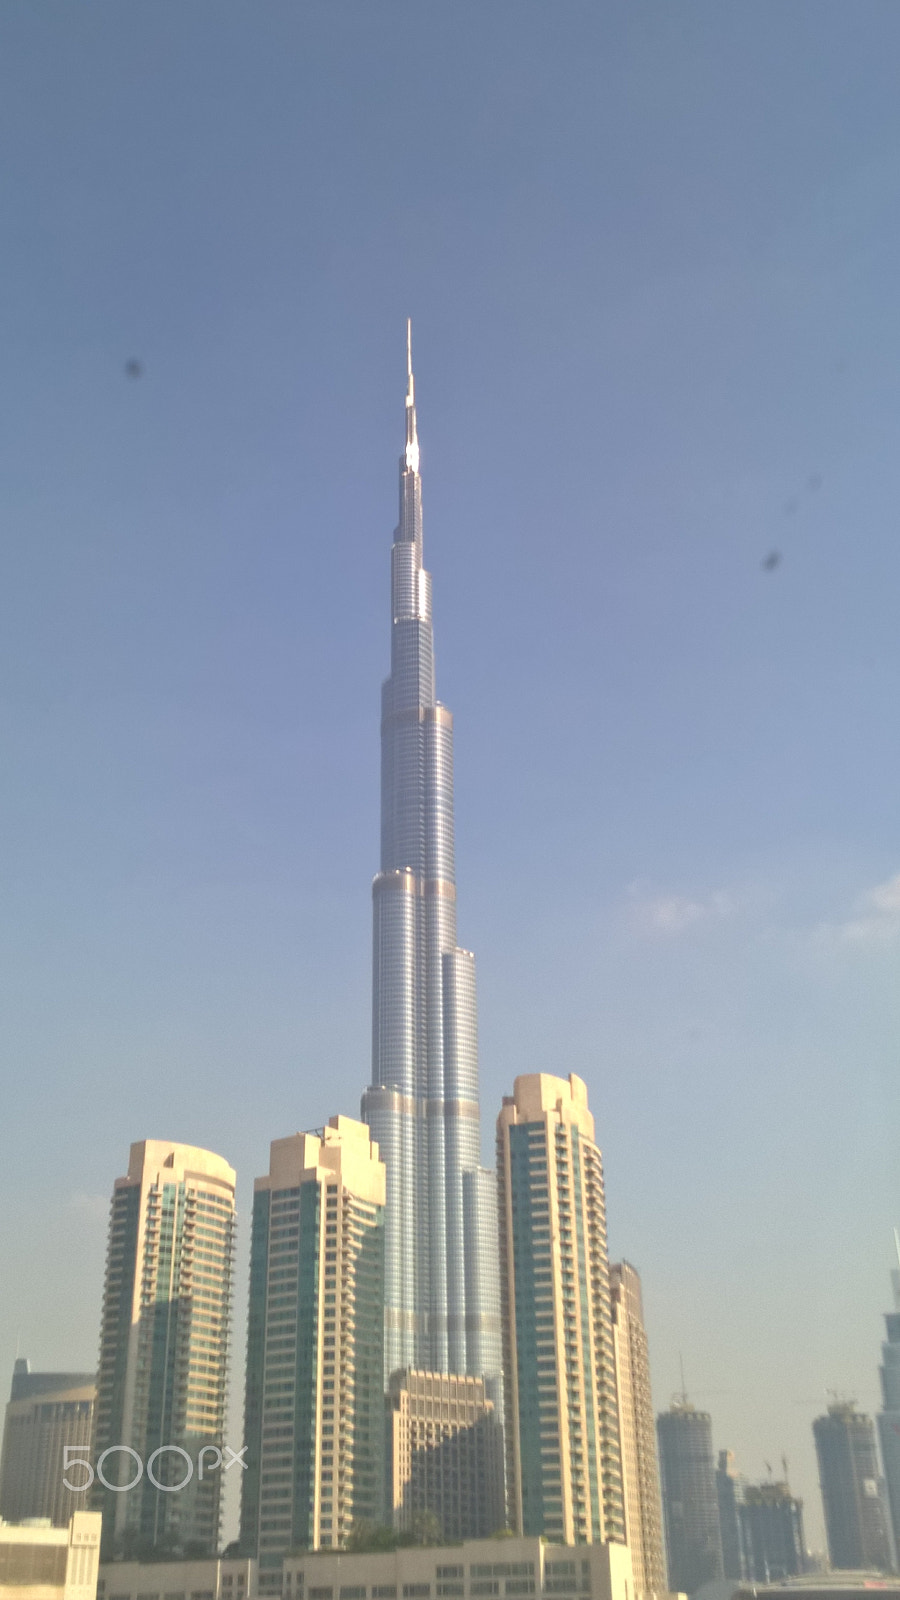 Nokia Lumia 929 sample photo. Dubai buildings photography